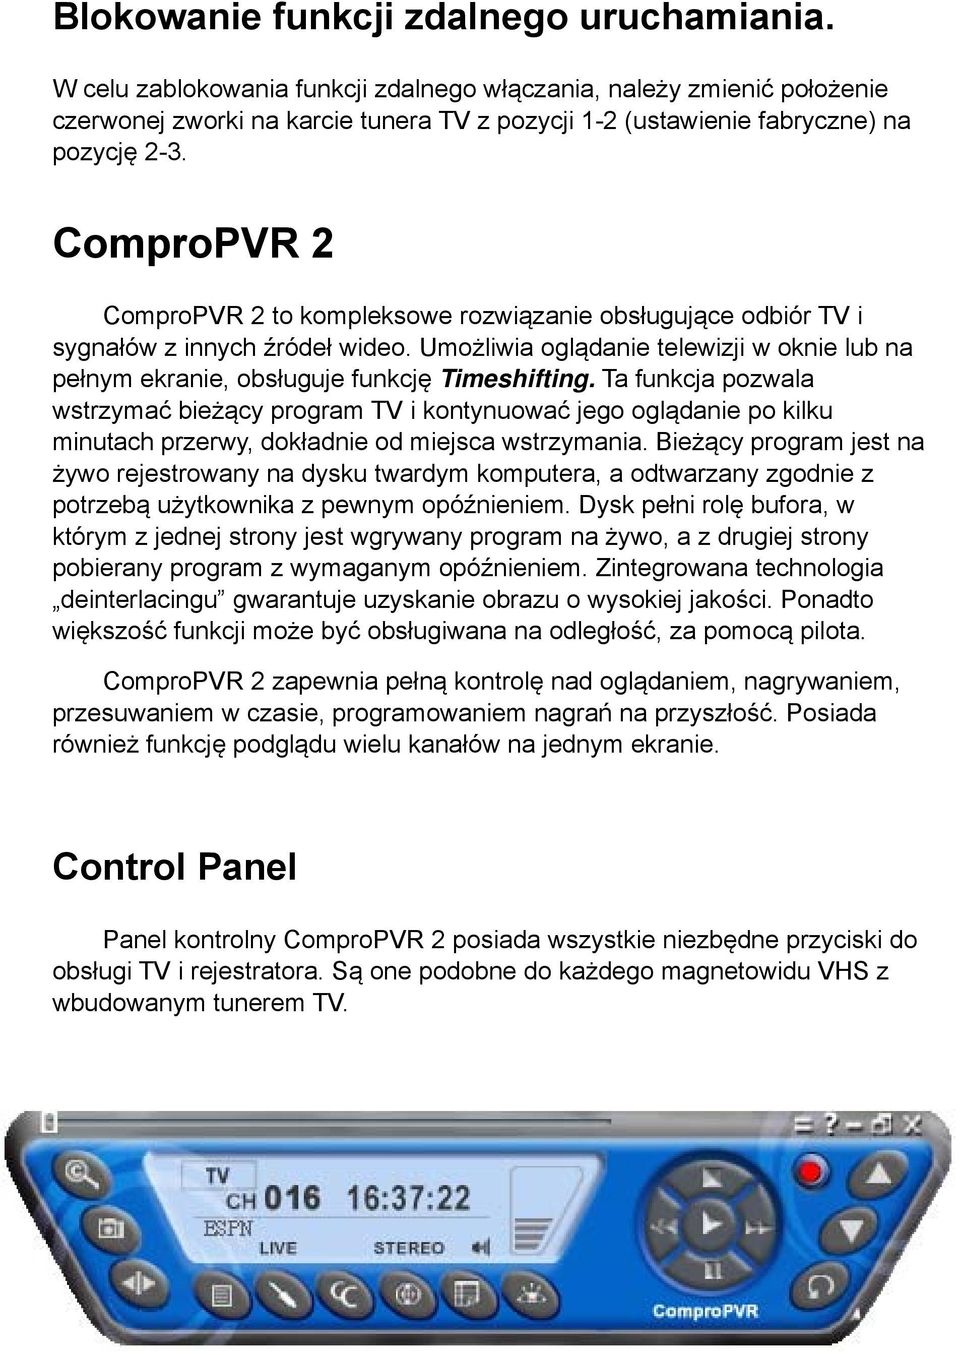 ComproPVR 2 ComproPVR 2 to kompleksowe rozwiązanie obsługujące odbiór TV i sygnałów z innych źródeł wideo. Umożliwia oglądanie telewizji w oknie lub na pełnym ekranie, obsługuje funkcję Timeshifting.